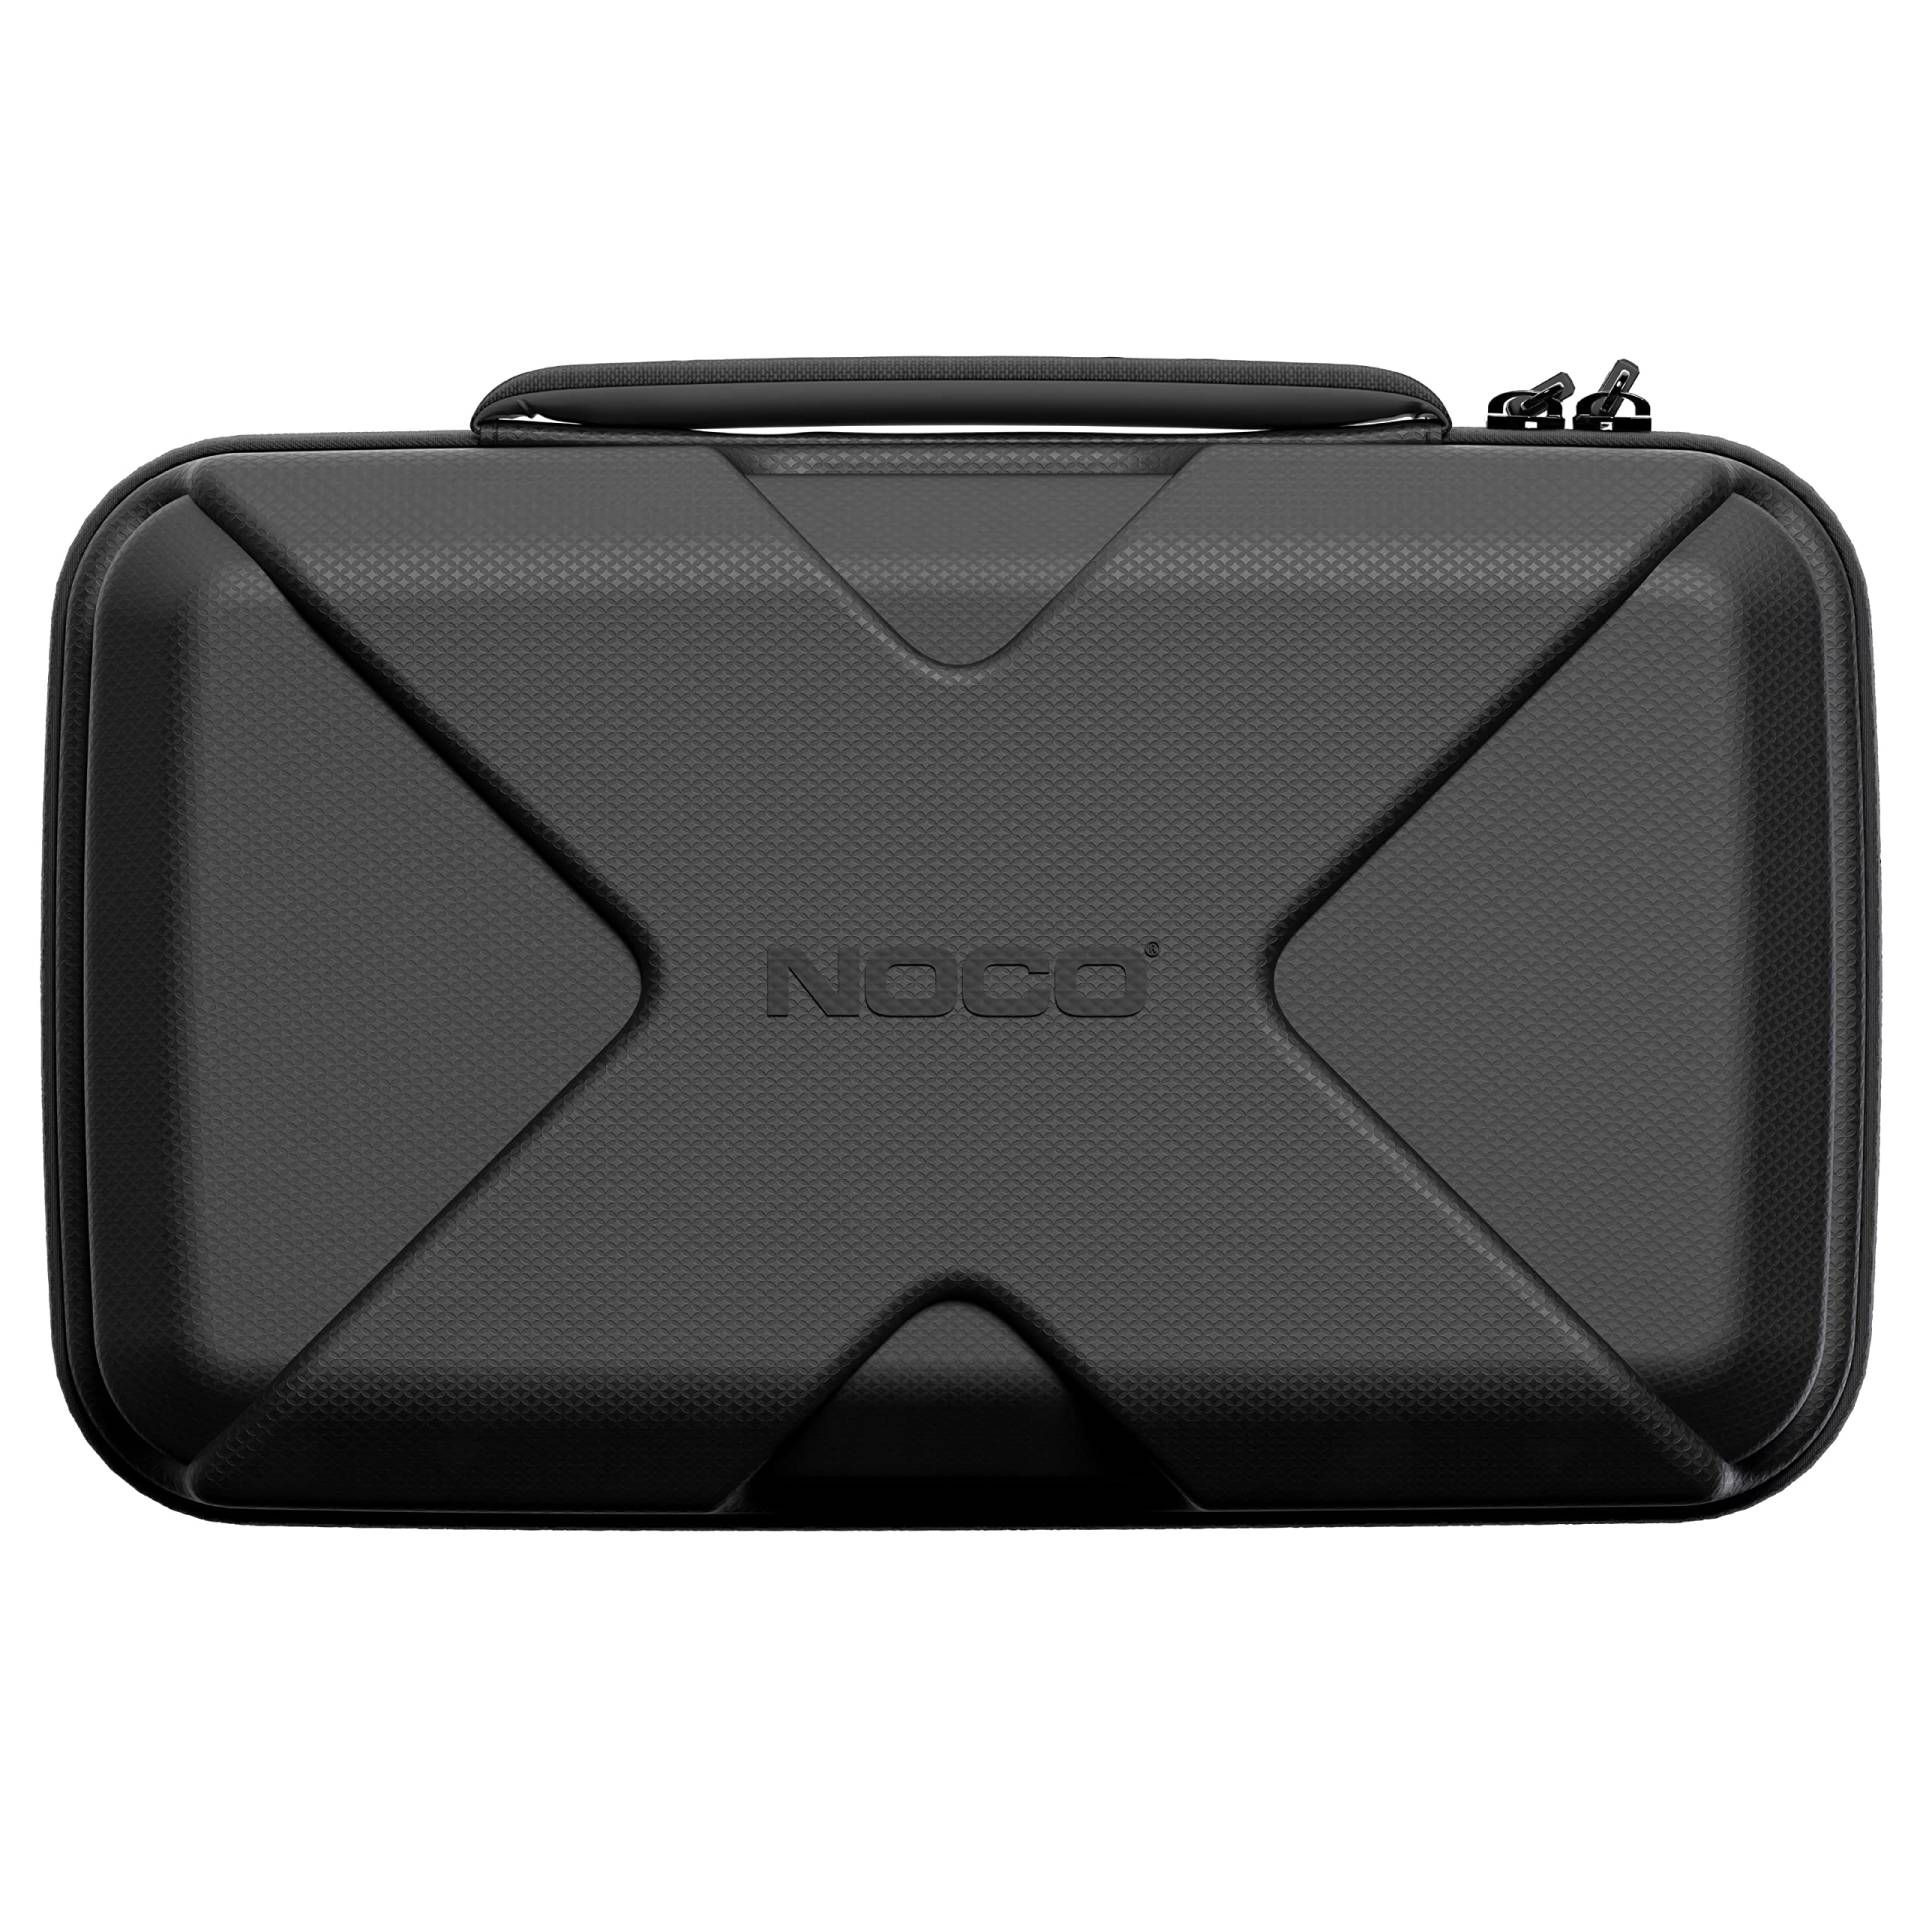 NOCO GBC102 Boost X EVA-Schutzhülle für GBX55 UltraSafe-Lithium-Starthilfen von NOCO